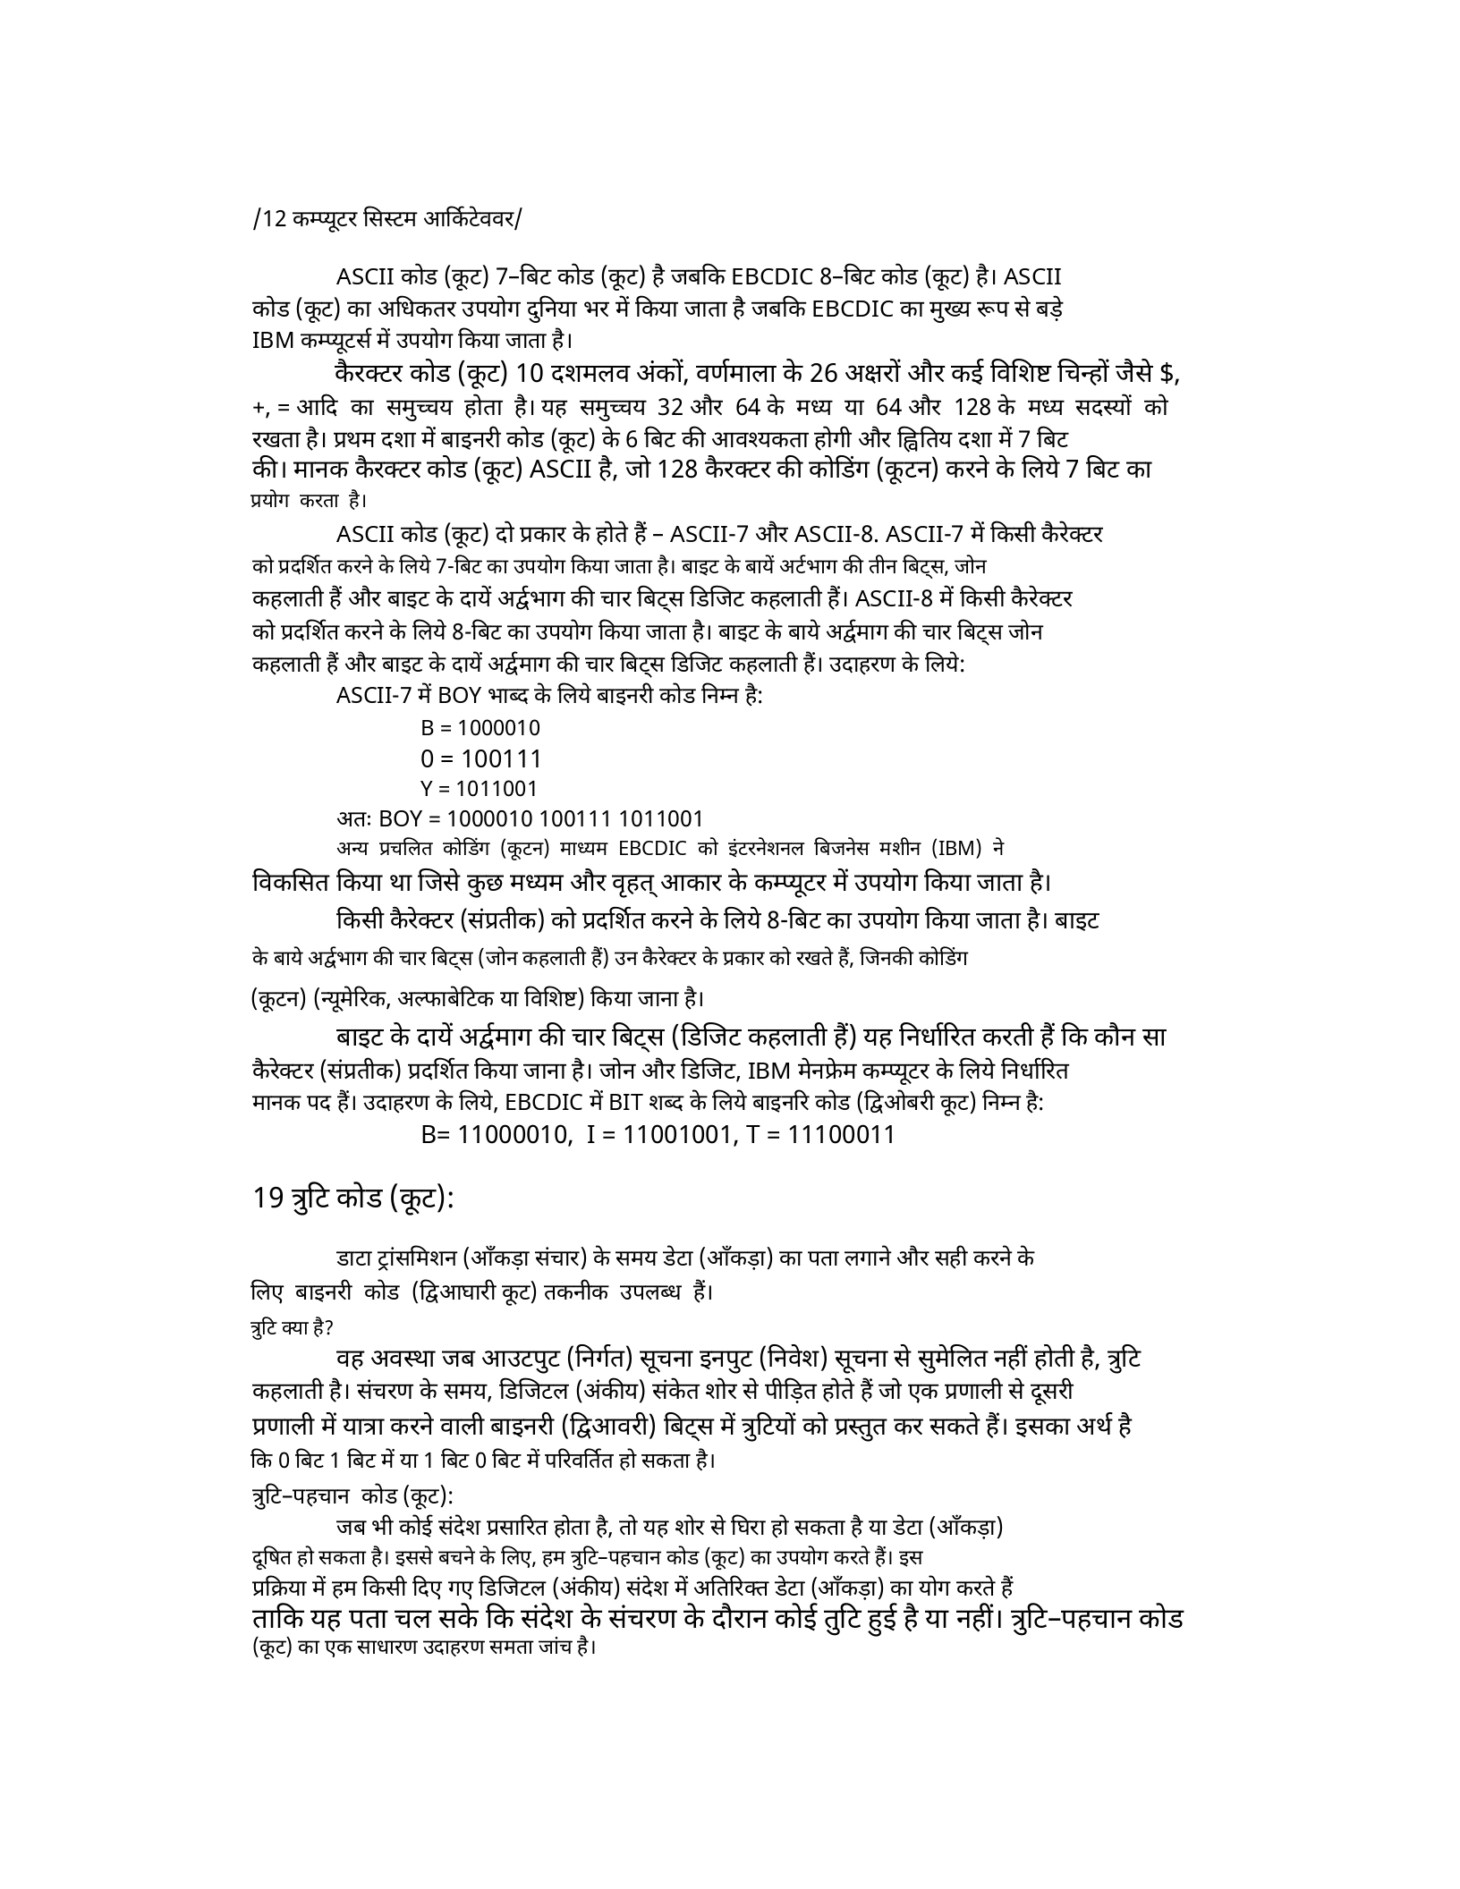 hindi_text.jpg